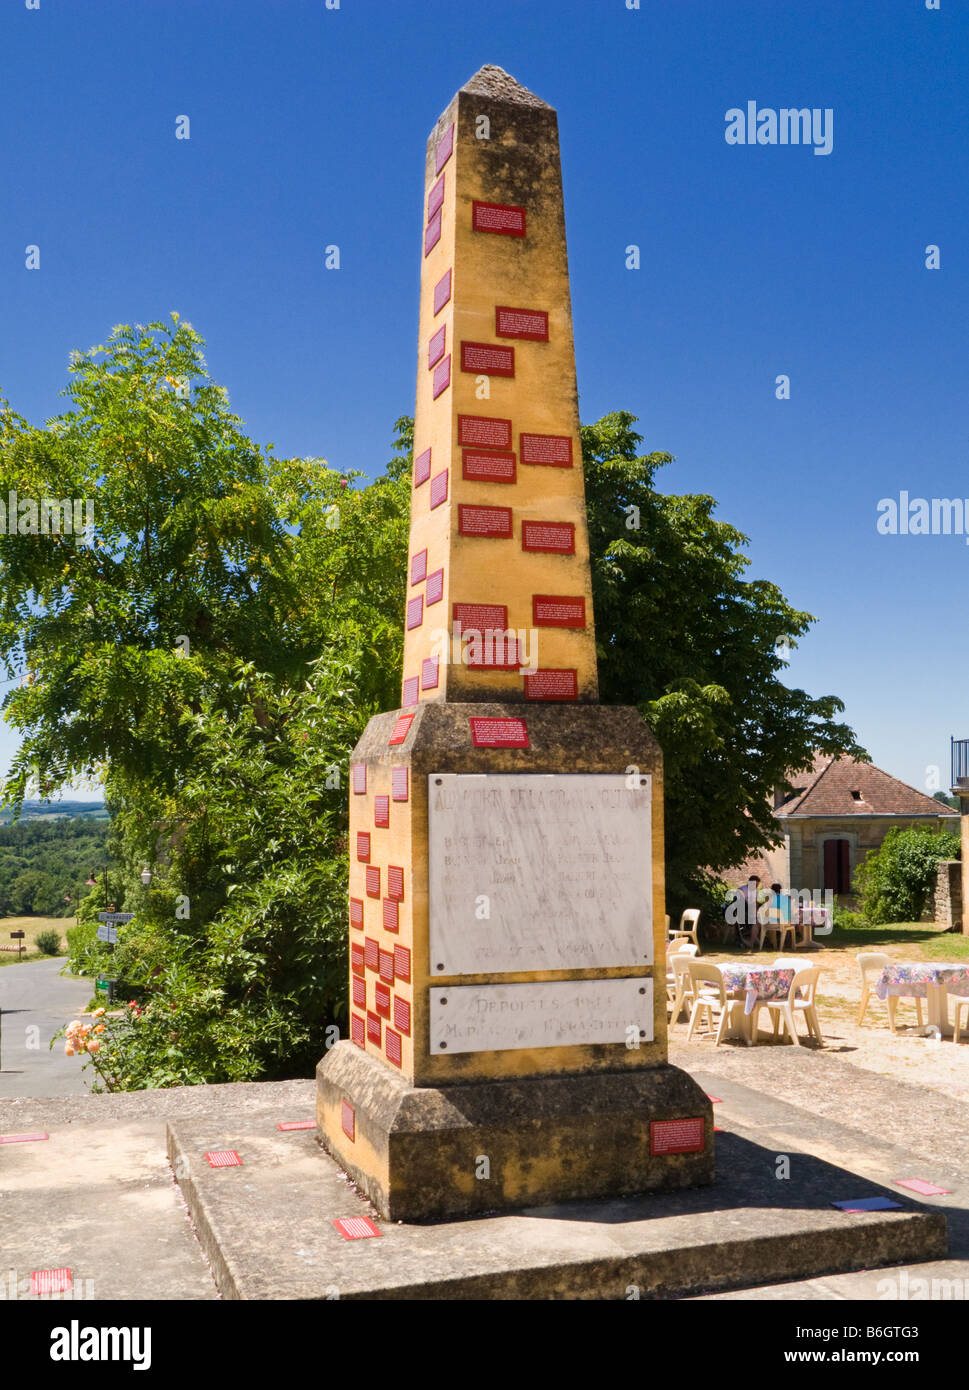 Le Monument Vivant de Biron, montrant les habitants des réponses à une question secrète, au château de Biron, Dordogne, France Europe Banque D'Images